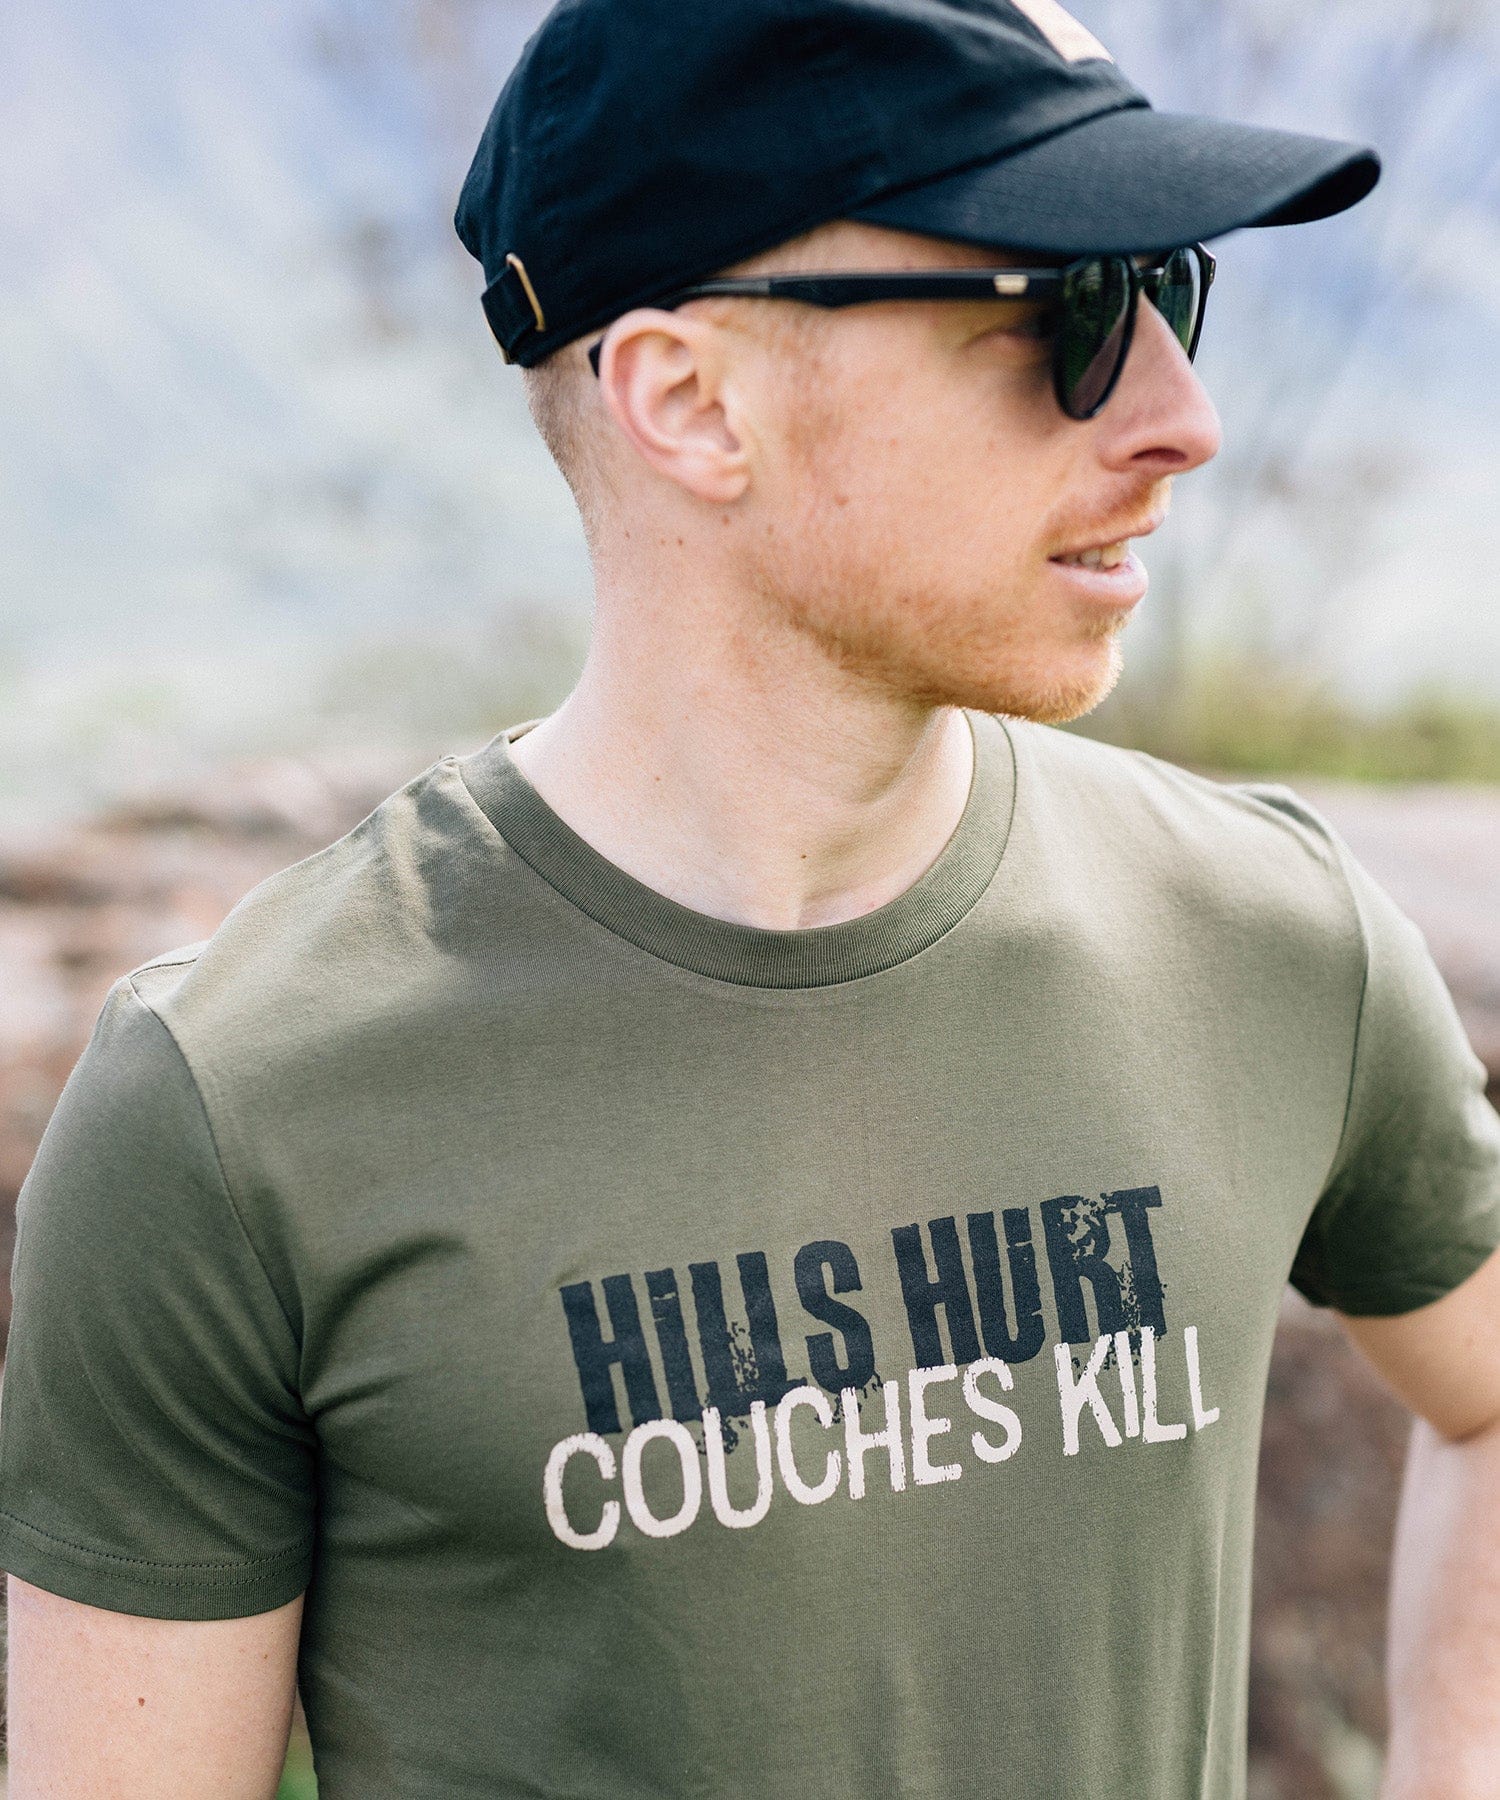 Hills Hurt Couches Kill - Unisex Premium Organic Shirt von Bergmensch